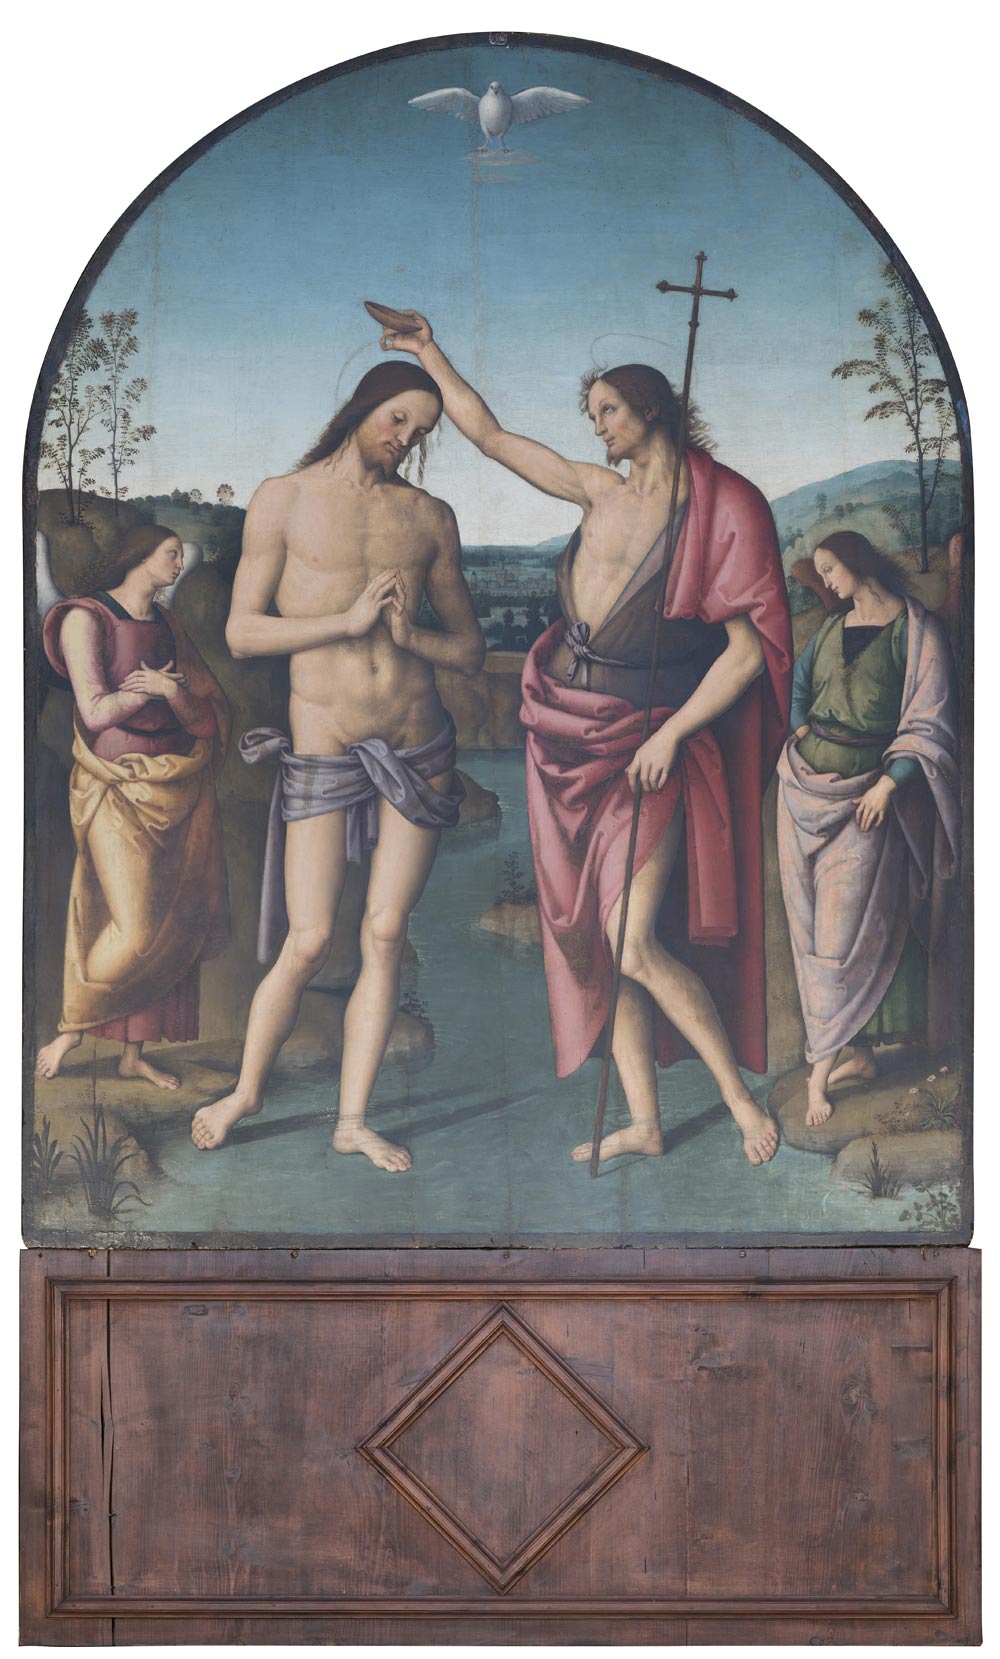 Perugino, Baptism of Christ (1495-1510; oil on panel, 160 x 210 cm; Città della Pieve, Cathedral of Saints Gervasius and Protasius)